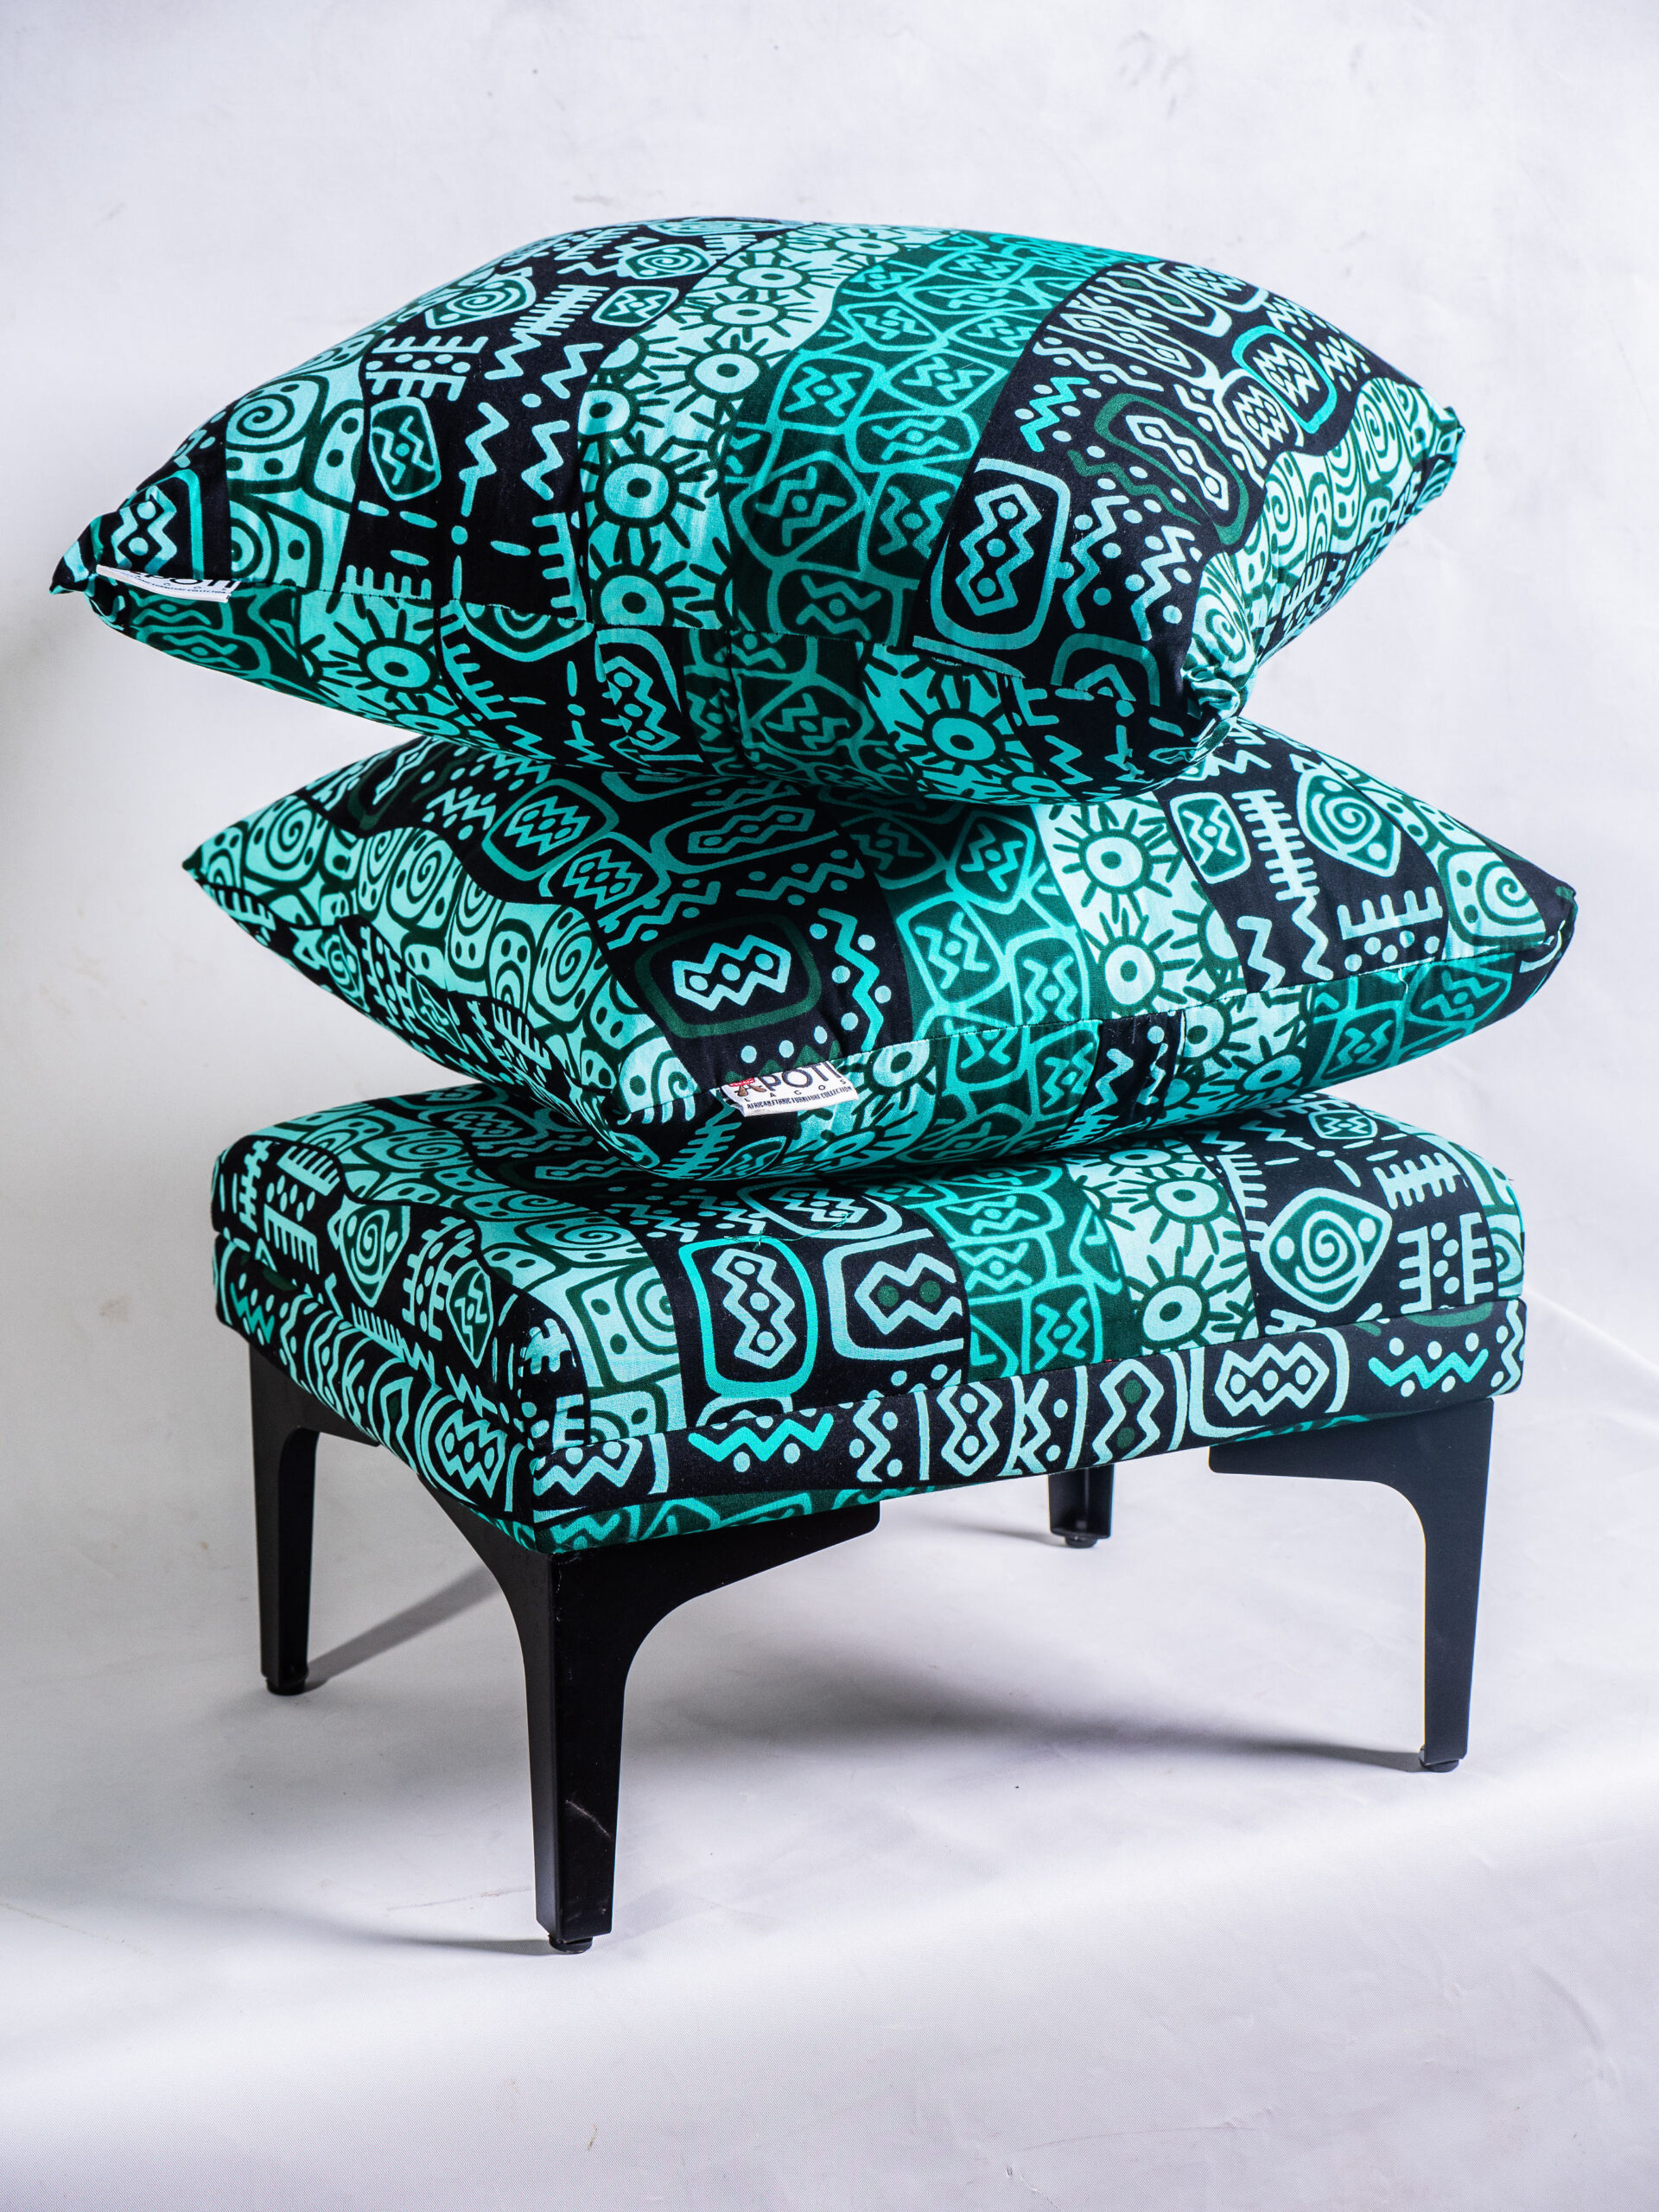 Throw pillows by Apoti Lagos on Bellafricana Marketplace